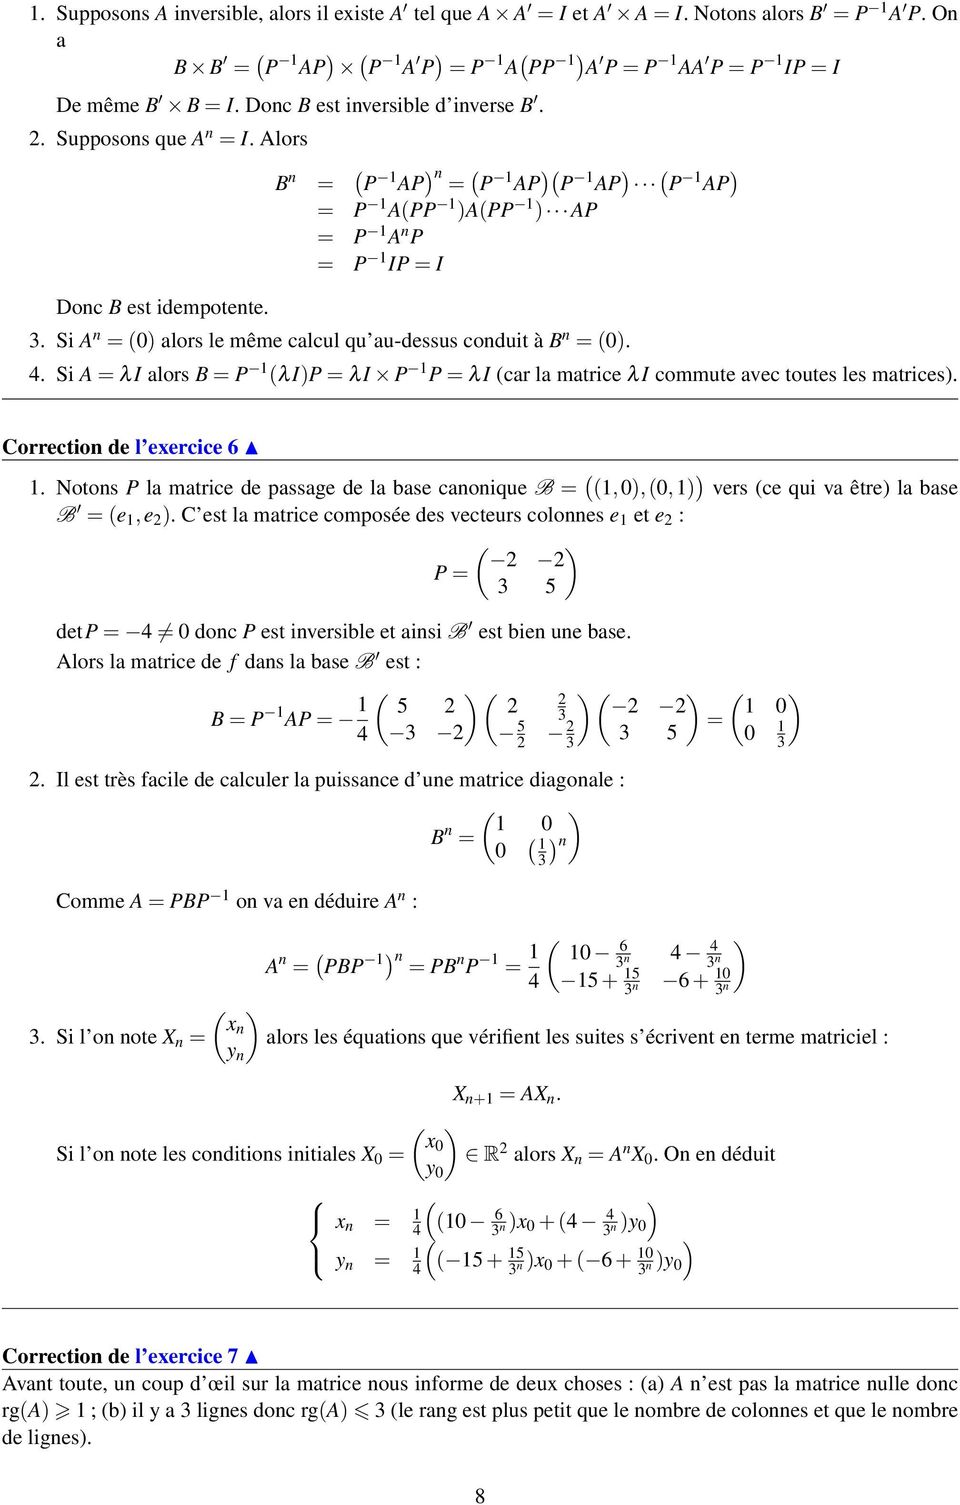 4. Si A = λi alors = P (λi)p = λi P P = λi (car la matrice λi commute avec toutes les matrices). Correction de l exercice 6.